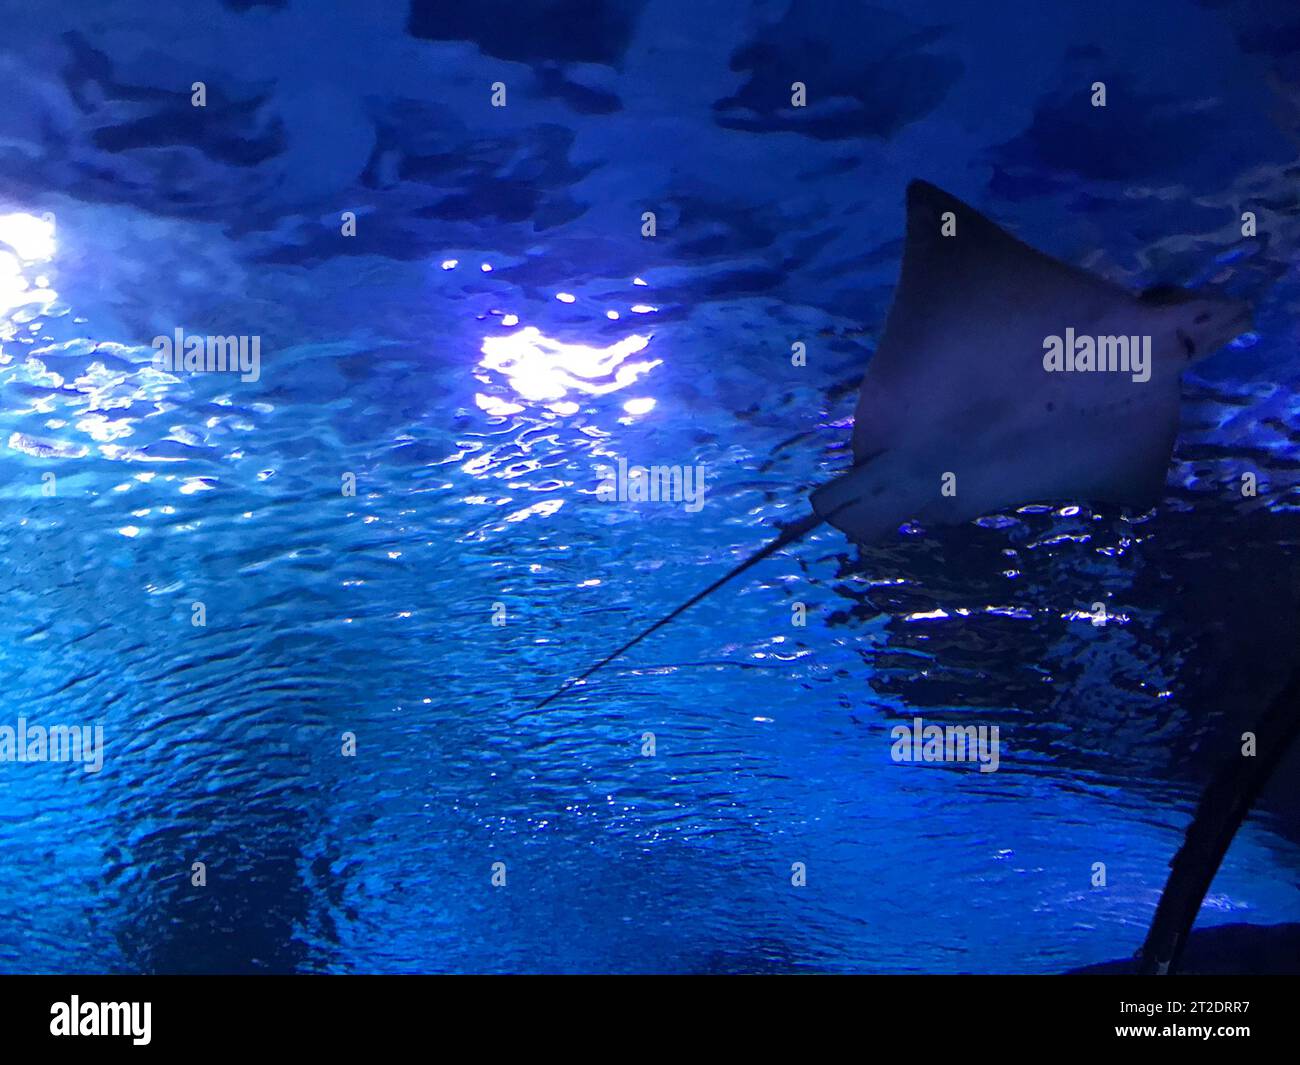 Cramp-fish in blue water. Stingray swimming underwater. Stock Photo